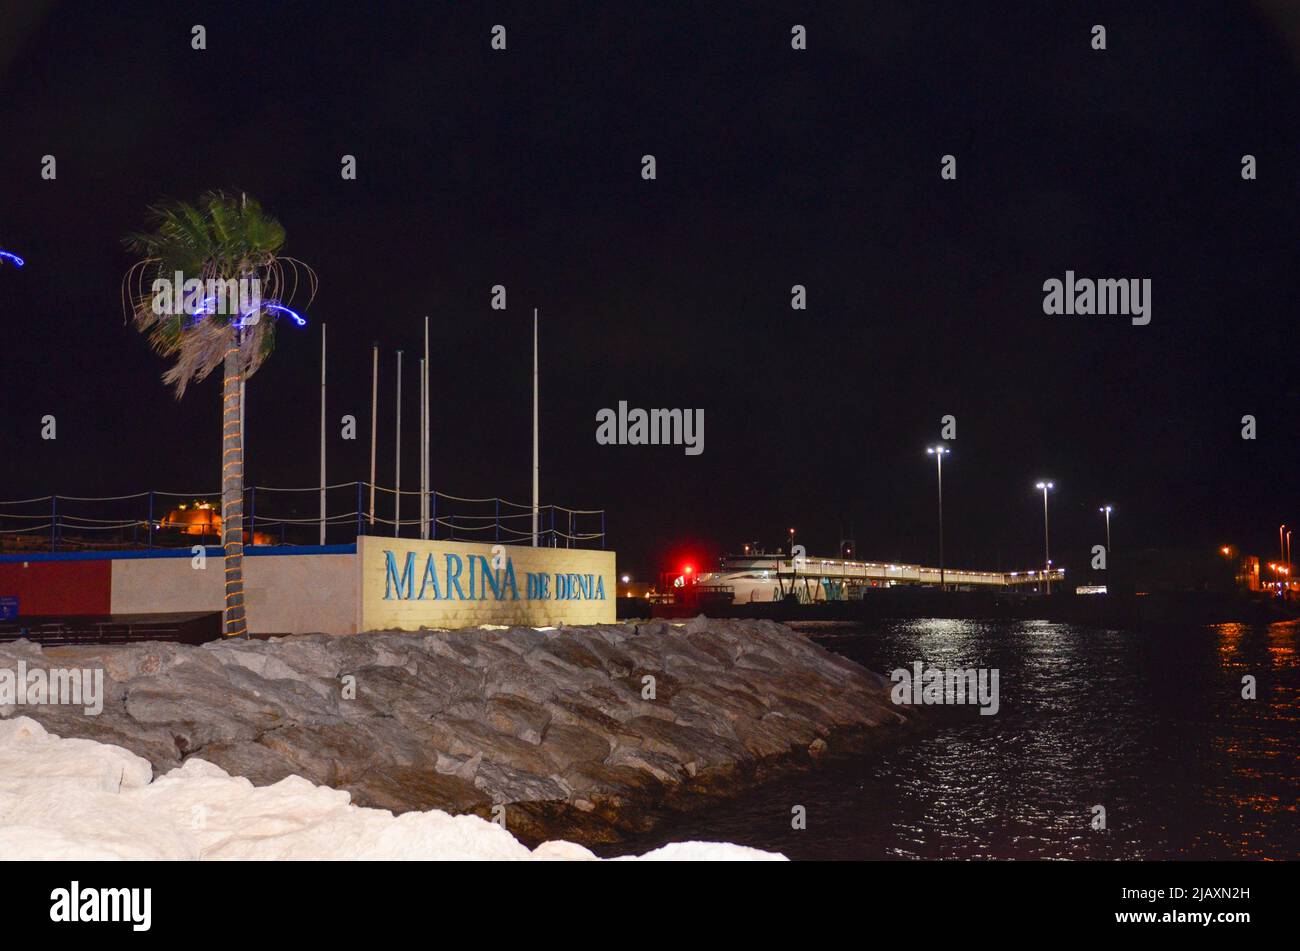 Denia, Alicante, Spanien - 26 2021. Juli: Hafeneingang mit beleuchtetem 'Marina de Denia' Schriftzug auf einer weißen Wand in der Nacht mit einem blau beleuchteten pal Stockfoto